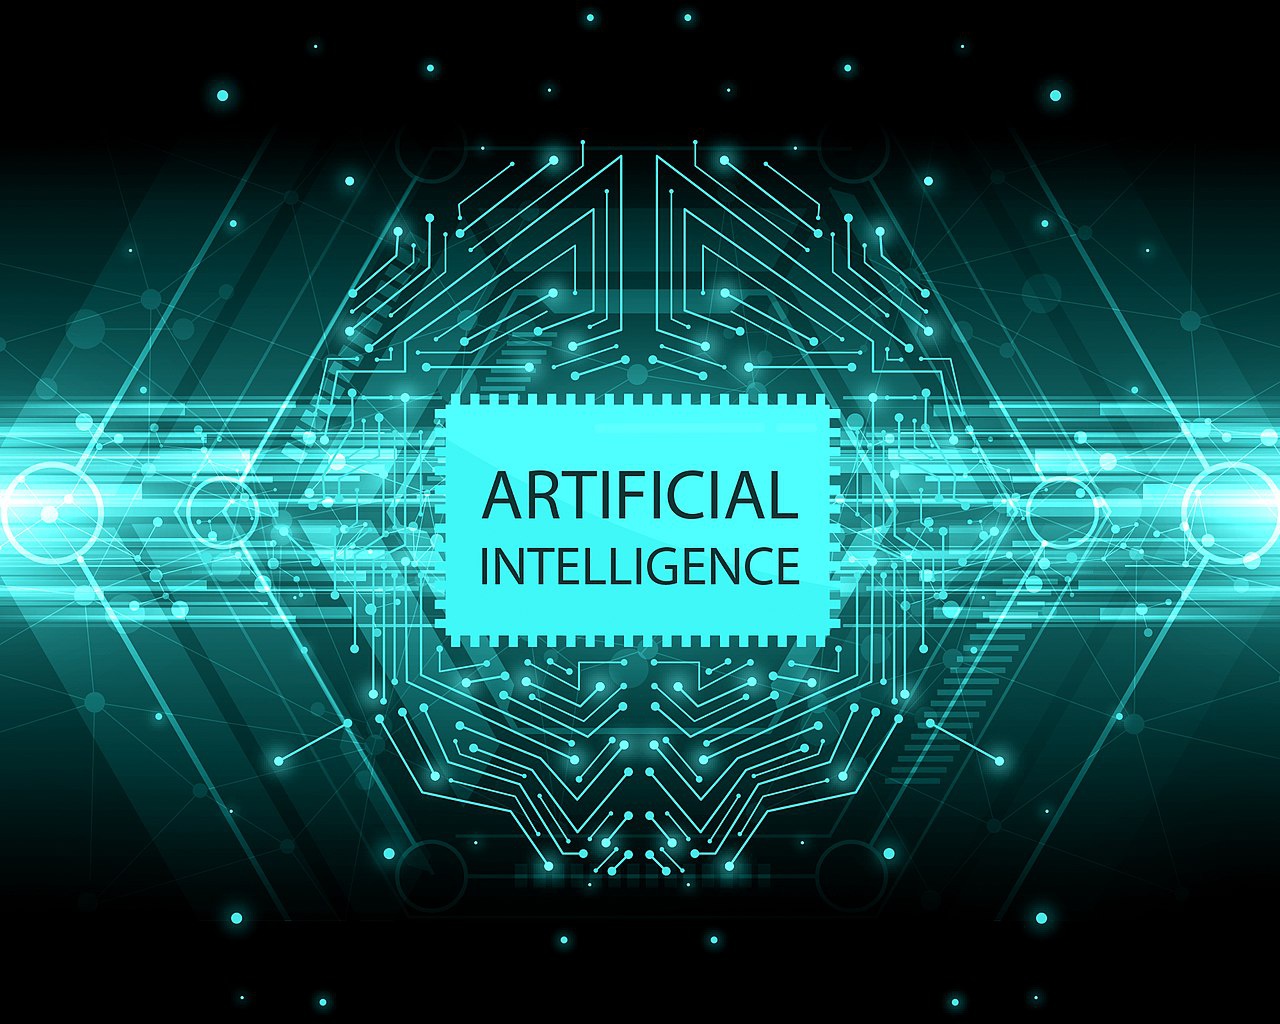 Политические лидеры и лидеры бизнеса вкладывают ресурсы в разработку технологии искусственного интеллекта.